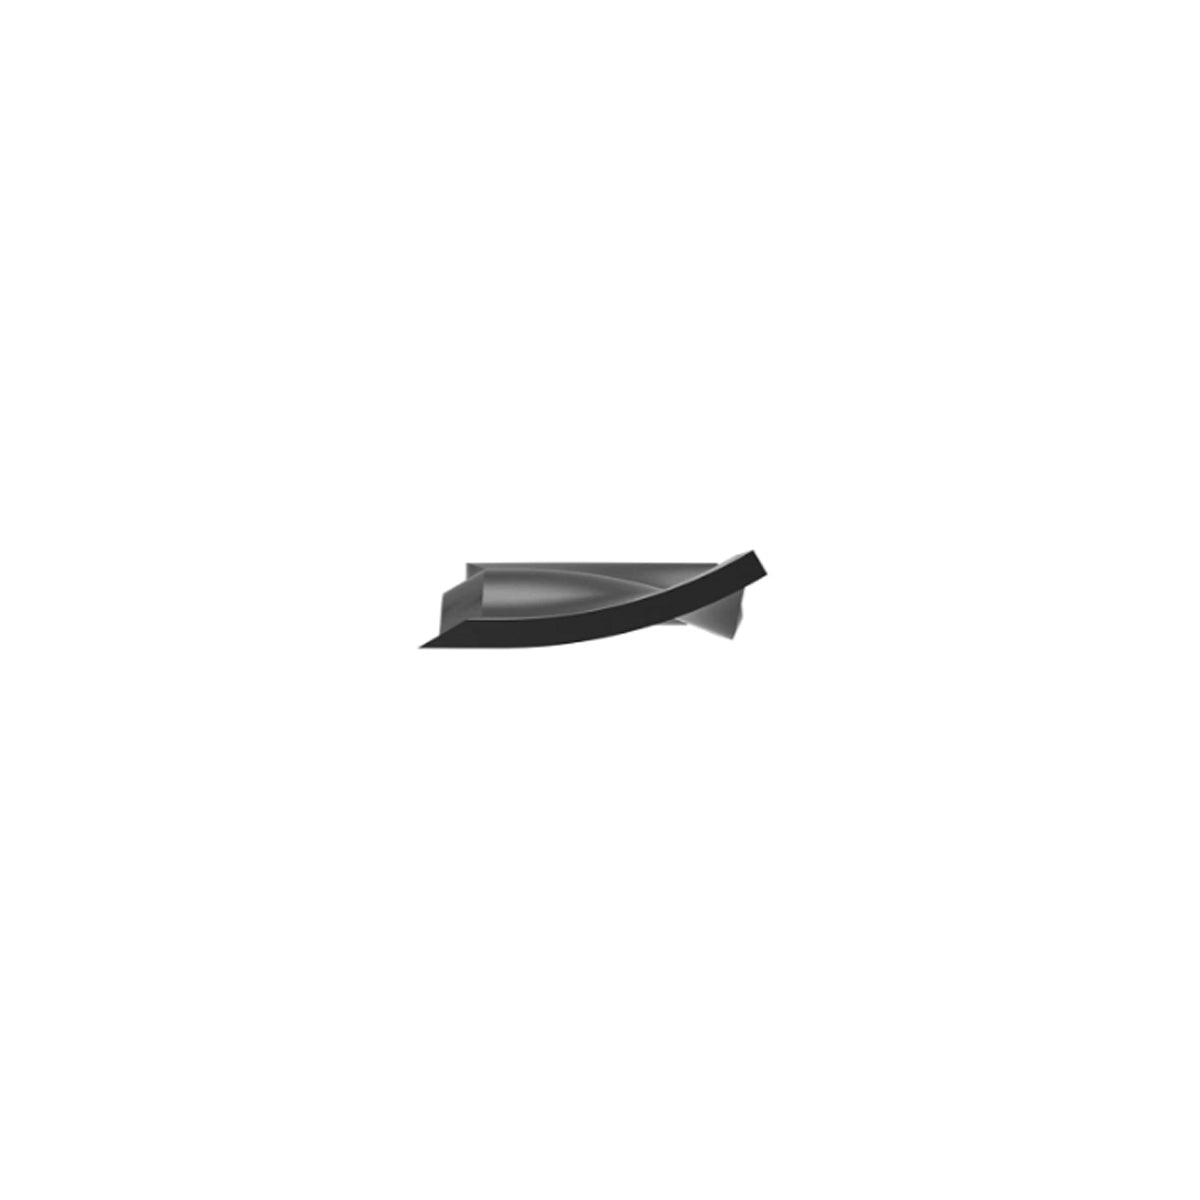 John Deere Mower Blade (Mulch) for 300, GT, GX, LT, LX, SST, Select & EZTrak Series with 48" Deck - M127673